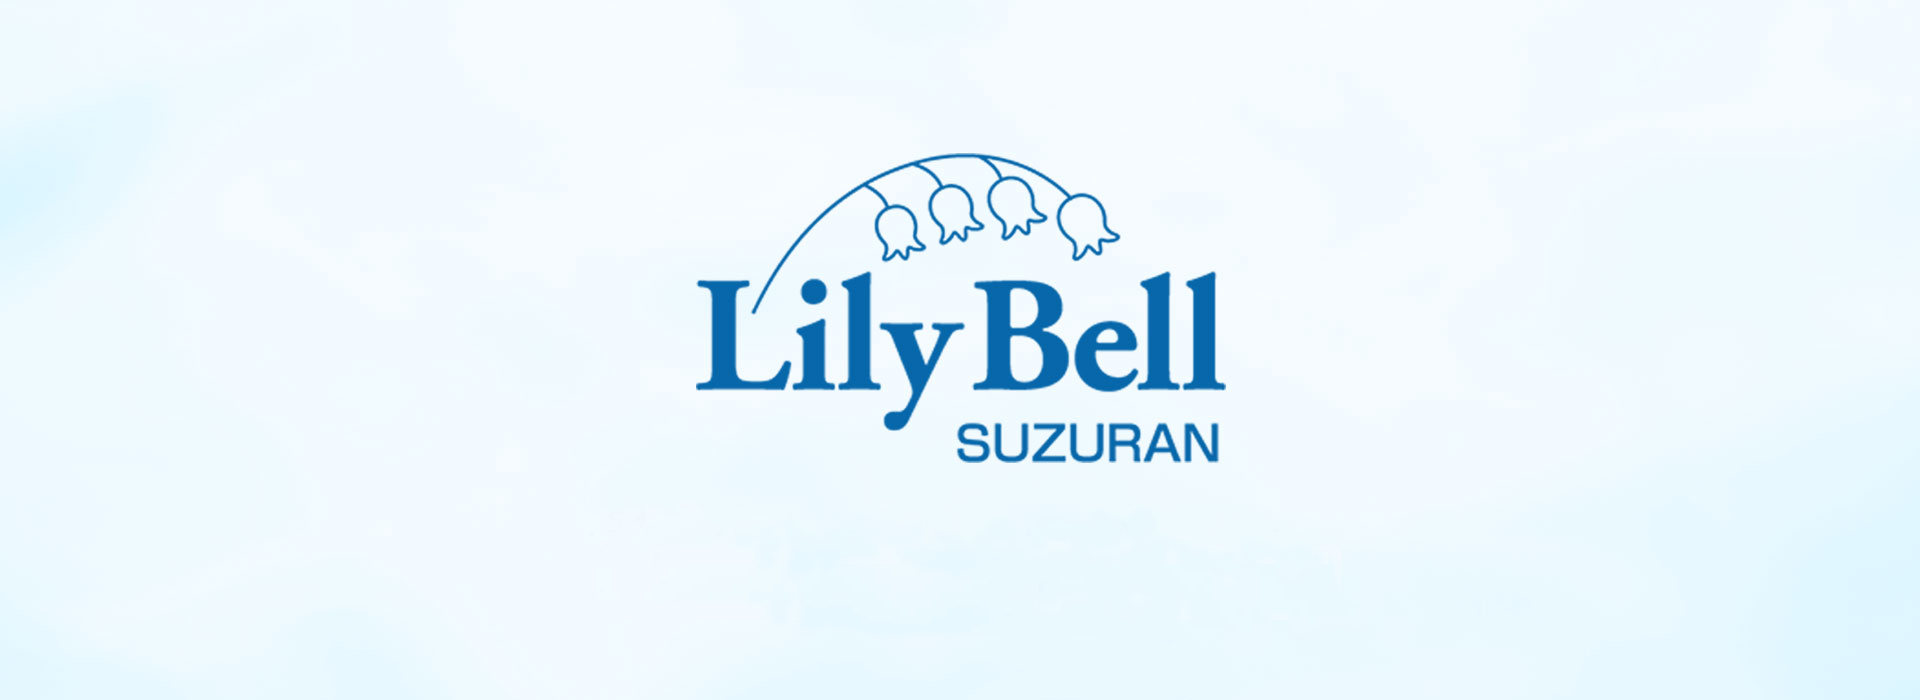 LilyBell Suzuran